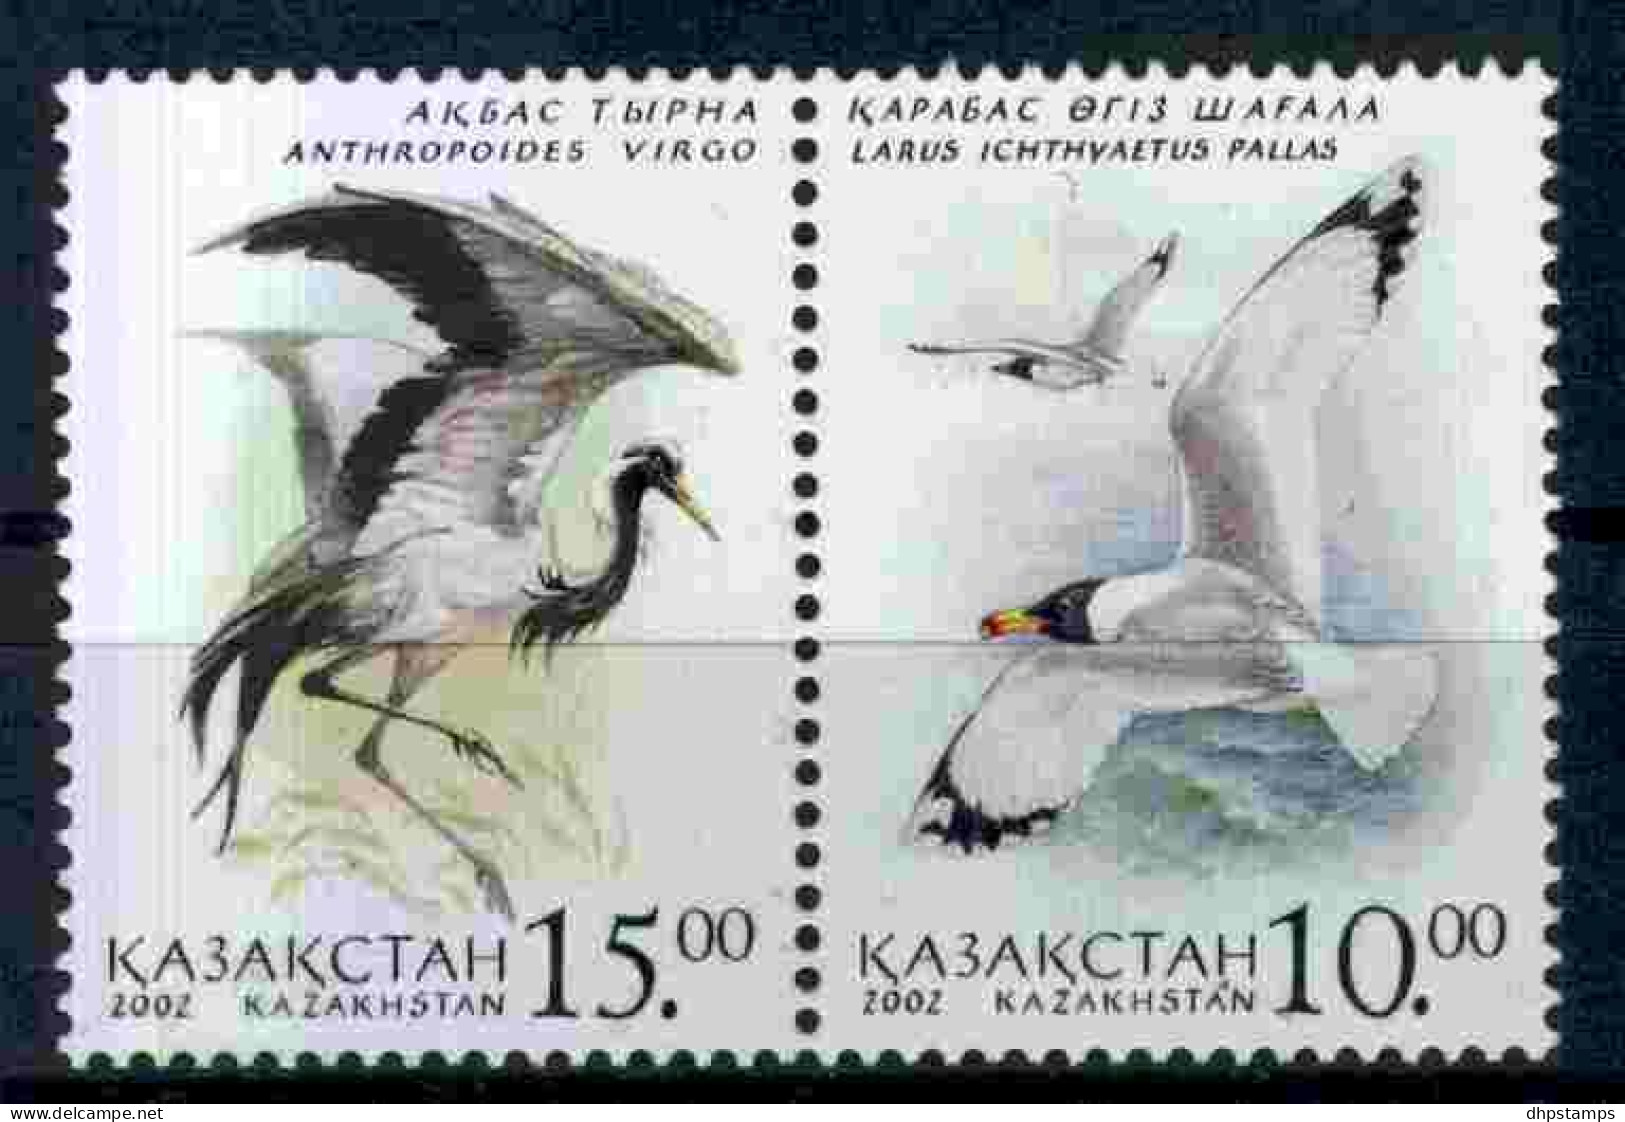 Kazakstan 2002 Birds Pair Y.T. 330/331 ** - Kasachstan